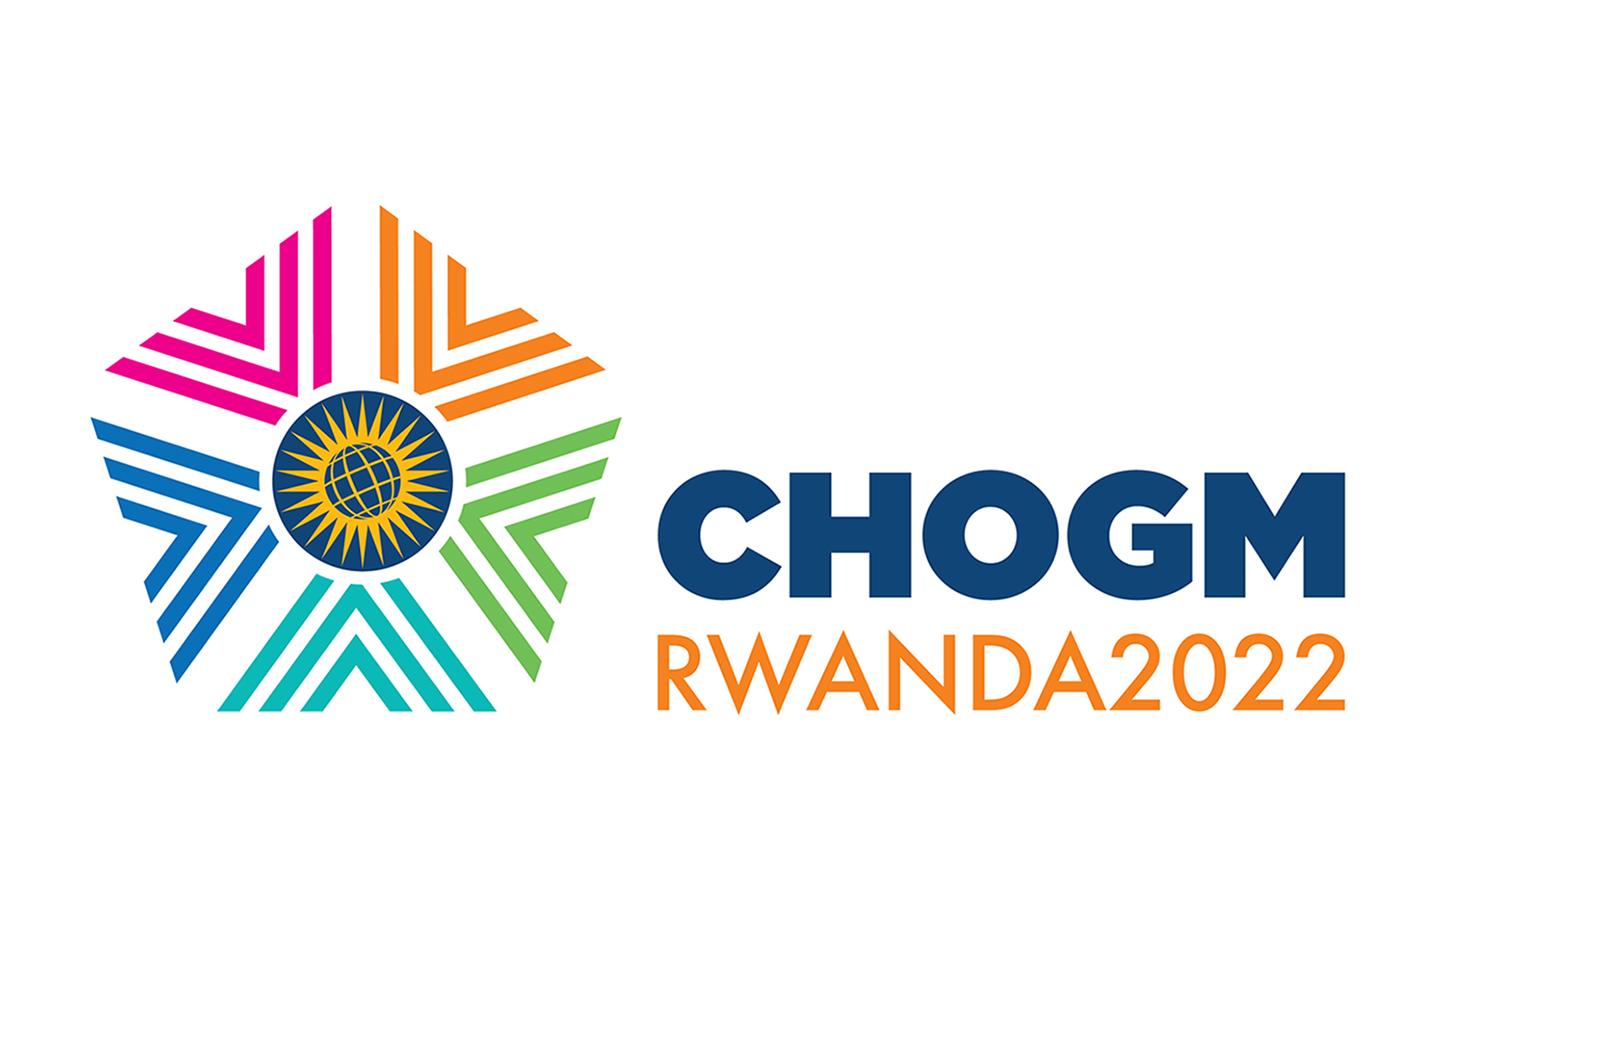 Rwanda to host 2022 Chogm